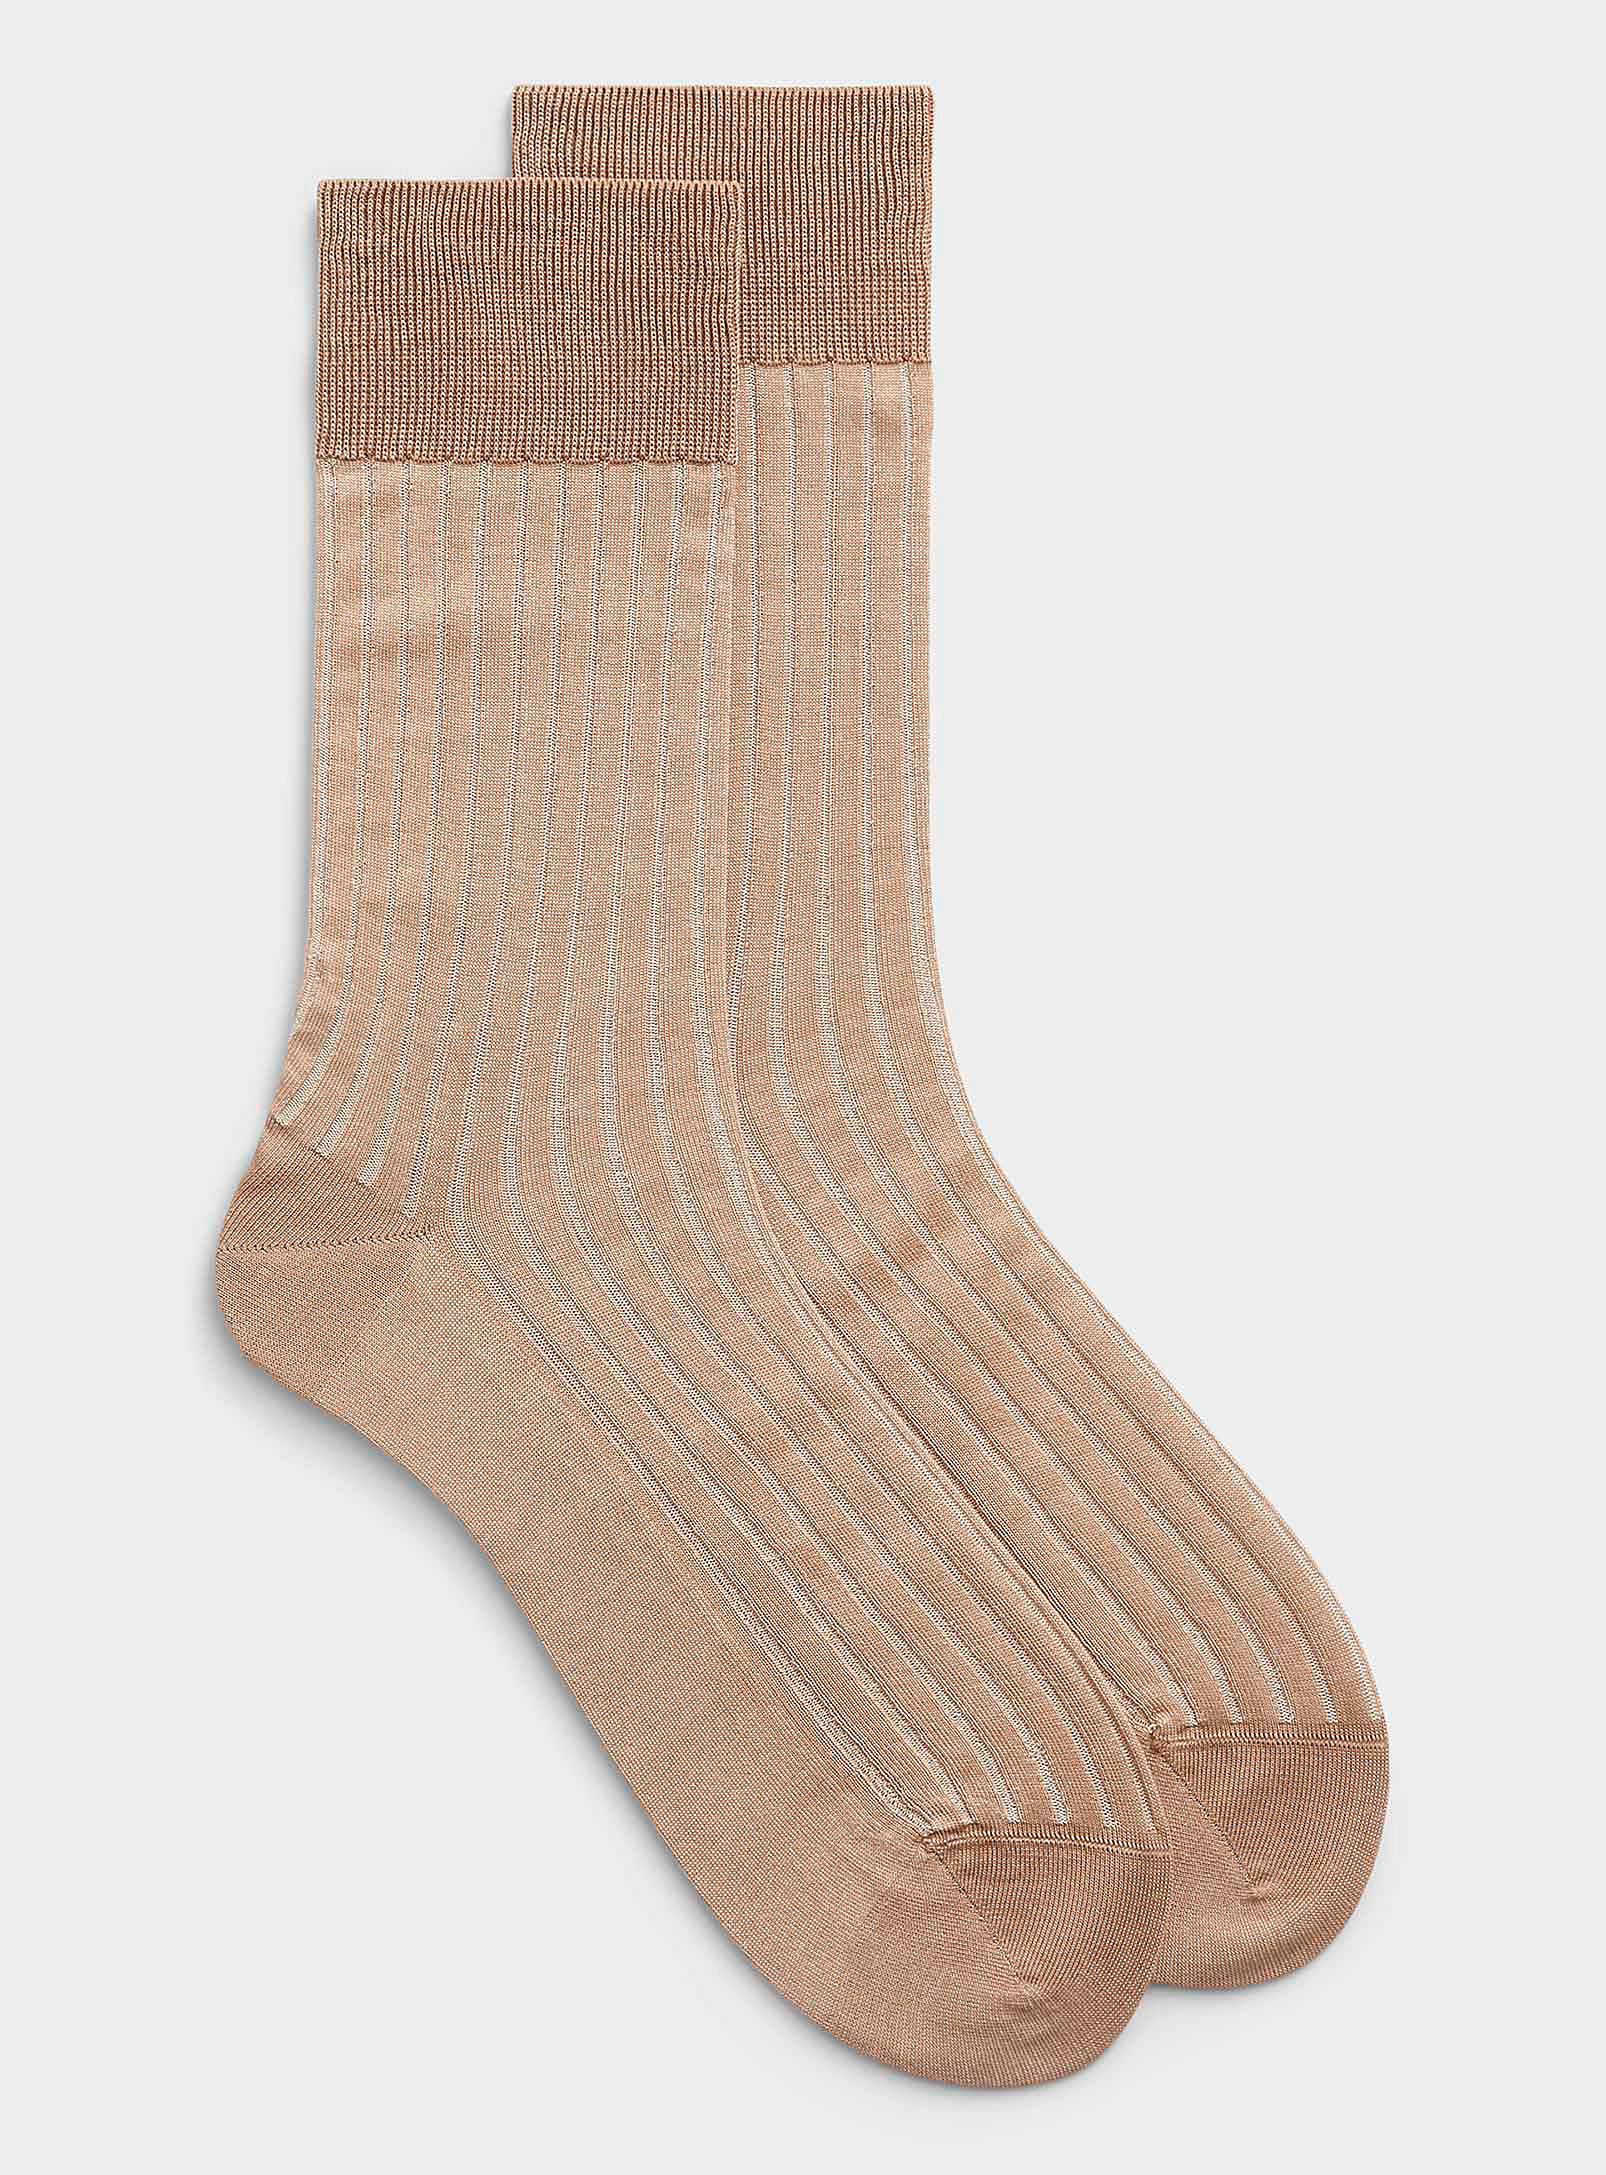 Falke Shadow Two-tone Sock In Patterned Brown